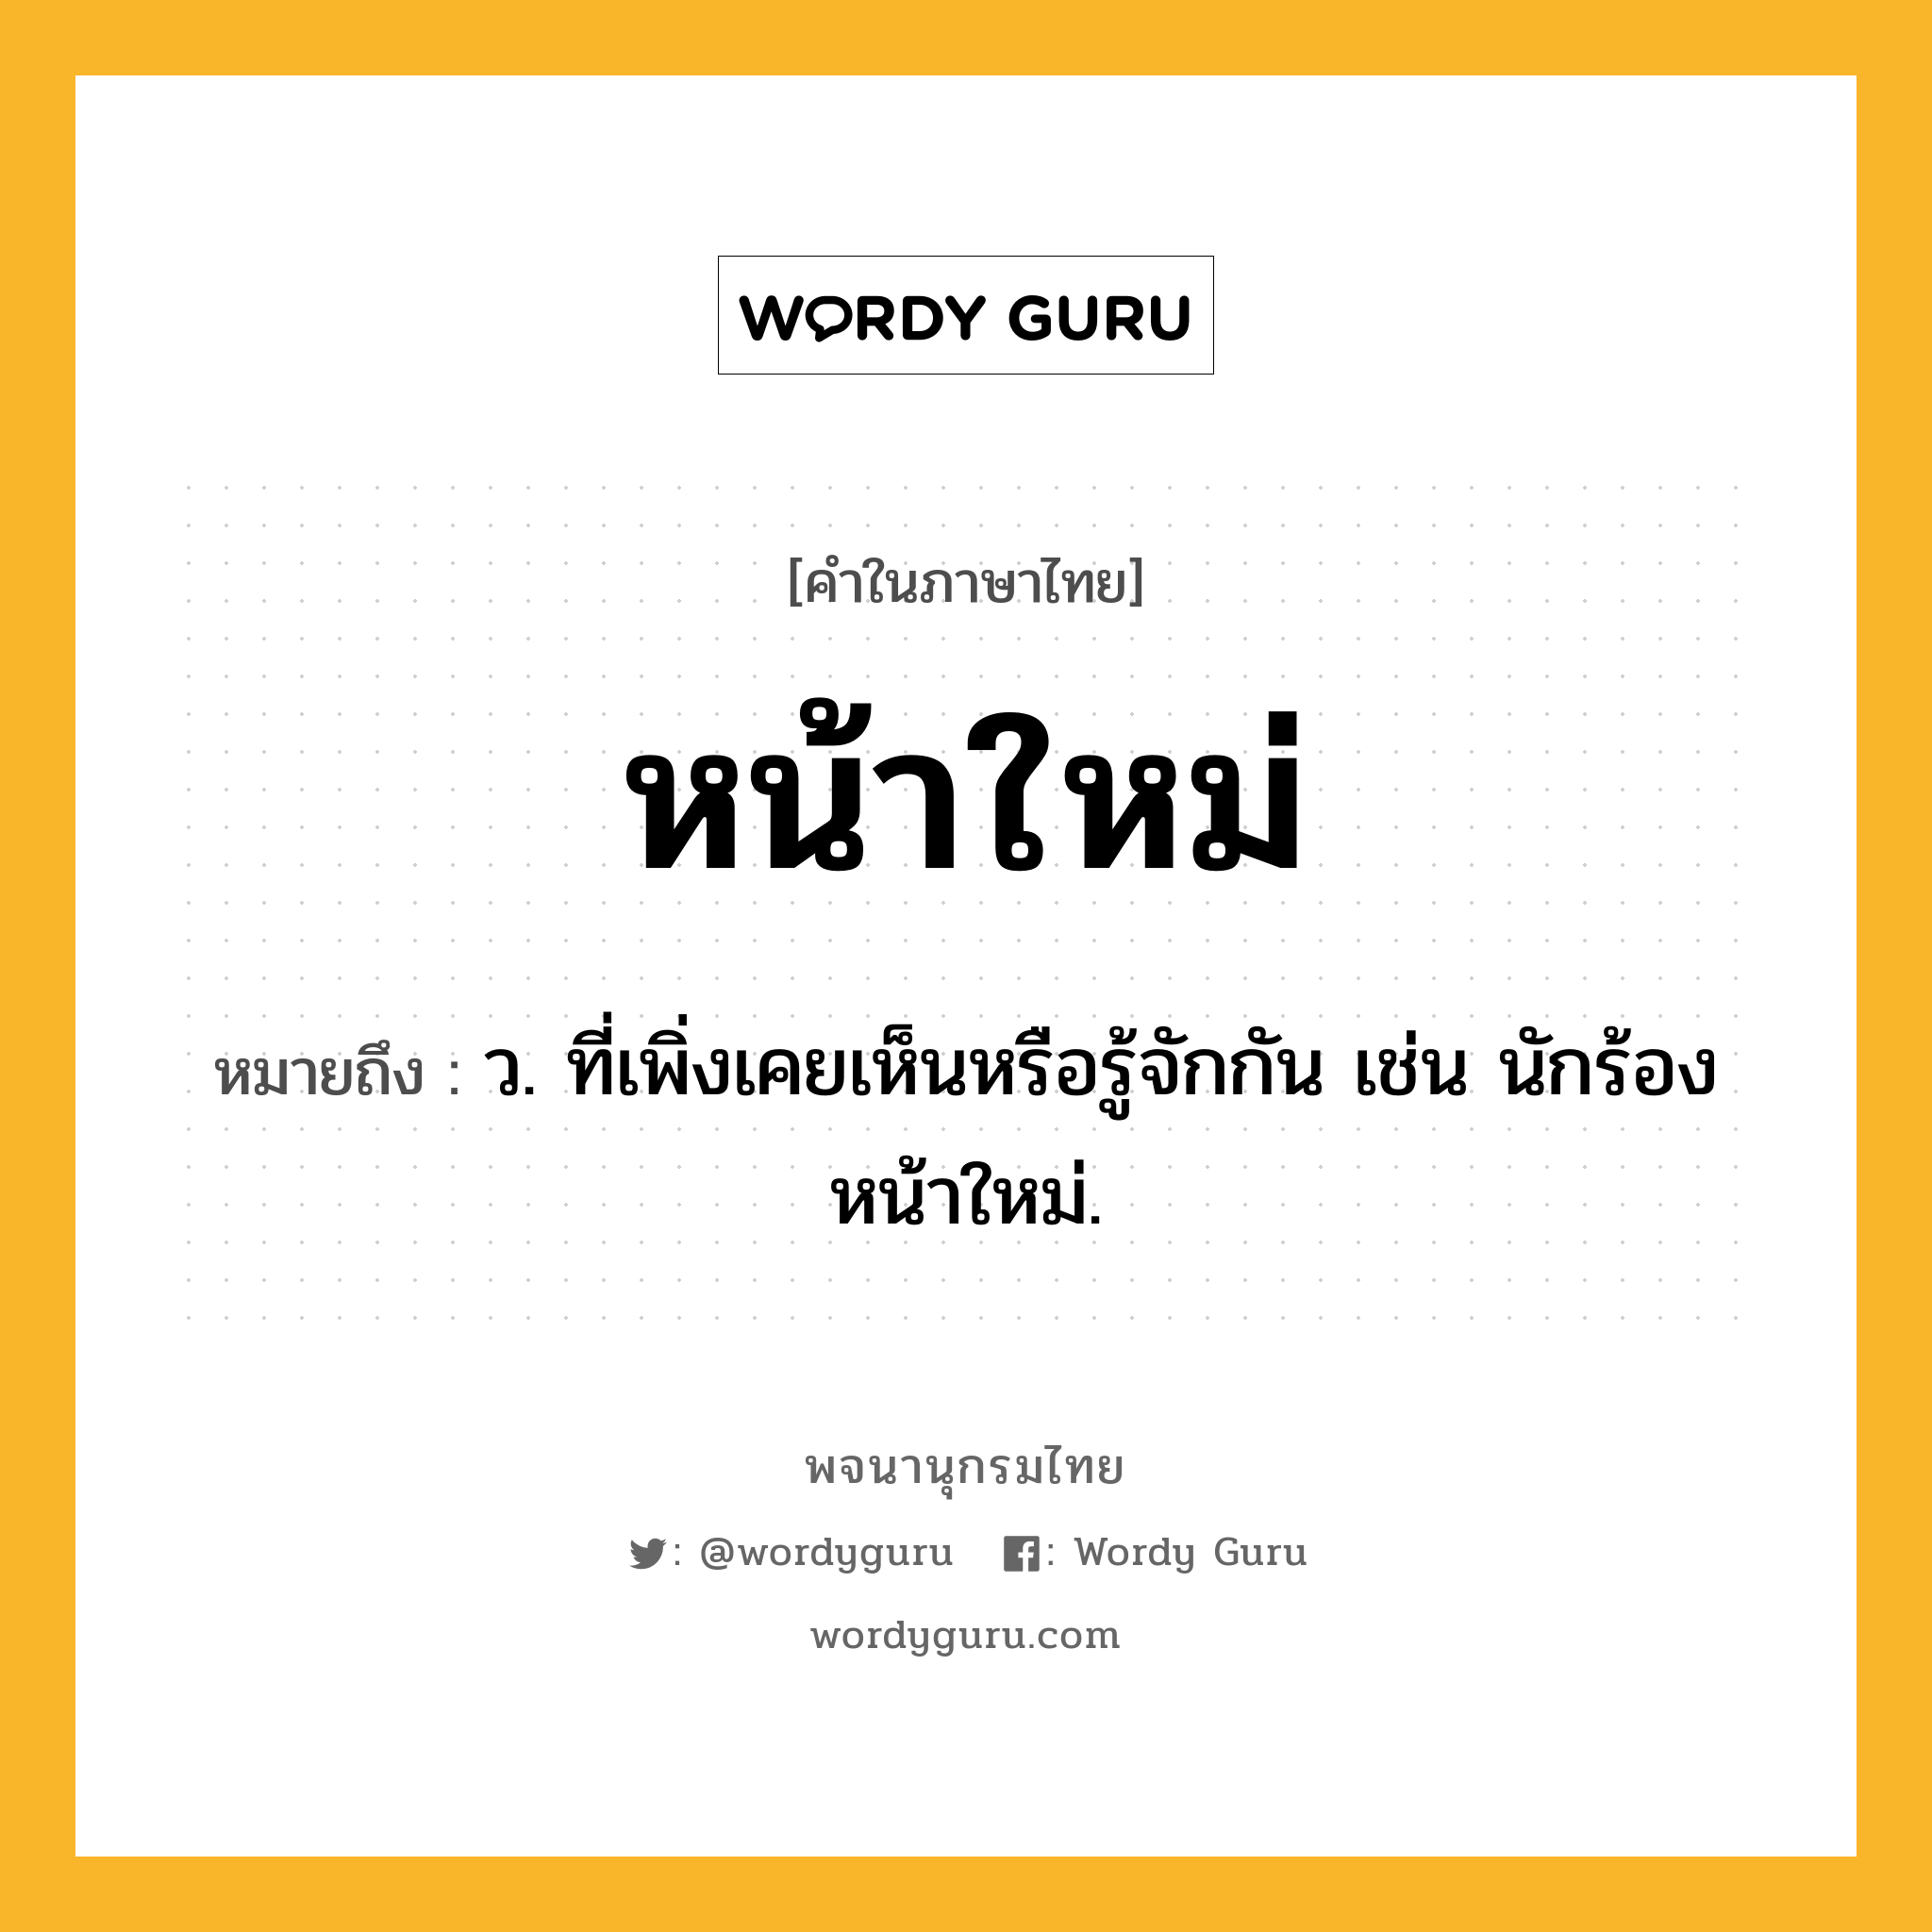 หน้าใหม่ ความหมาย หมายถึงอะไร?, คำในภาษาไทย หน้าใหม่ หมายถึง ว. ที่เพิ่งเคยเห็นหรือรู้จักกัน เช่น นักร้องหน้าใหม่.